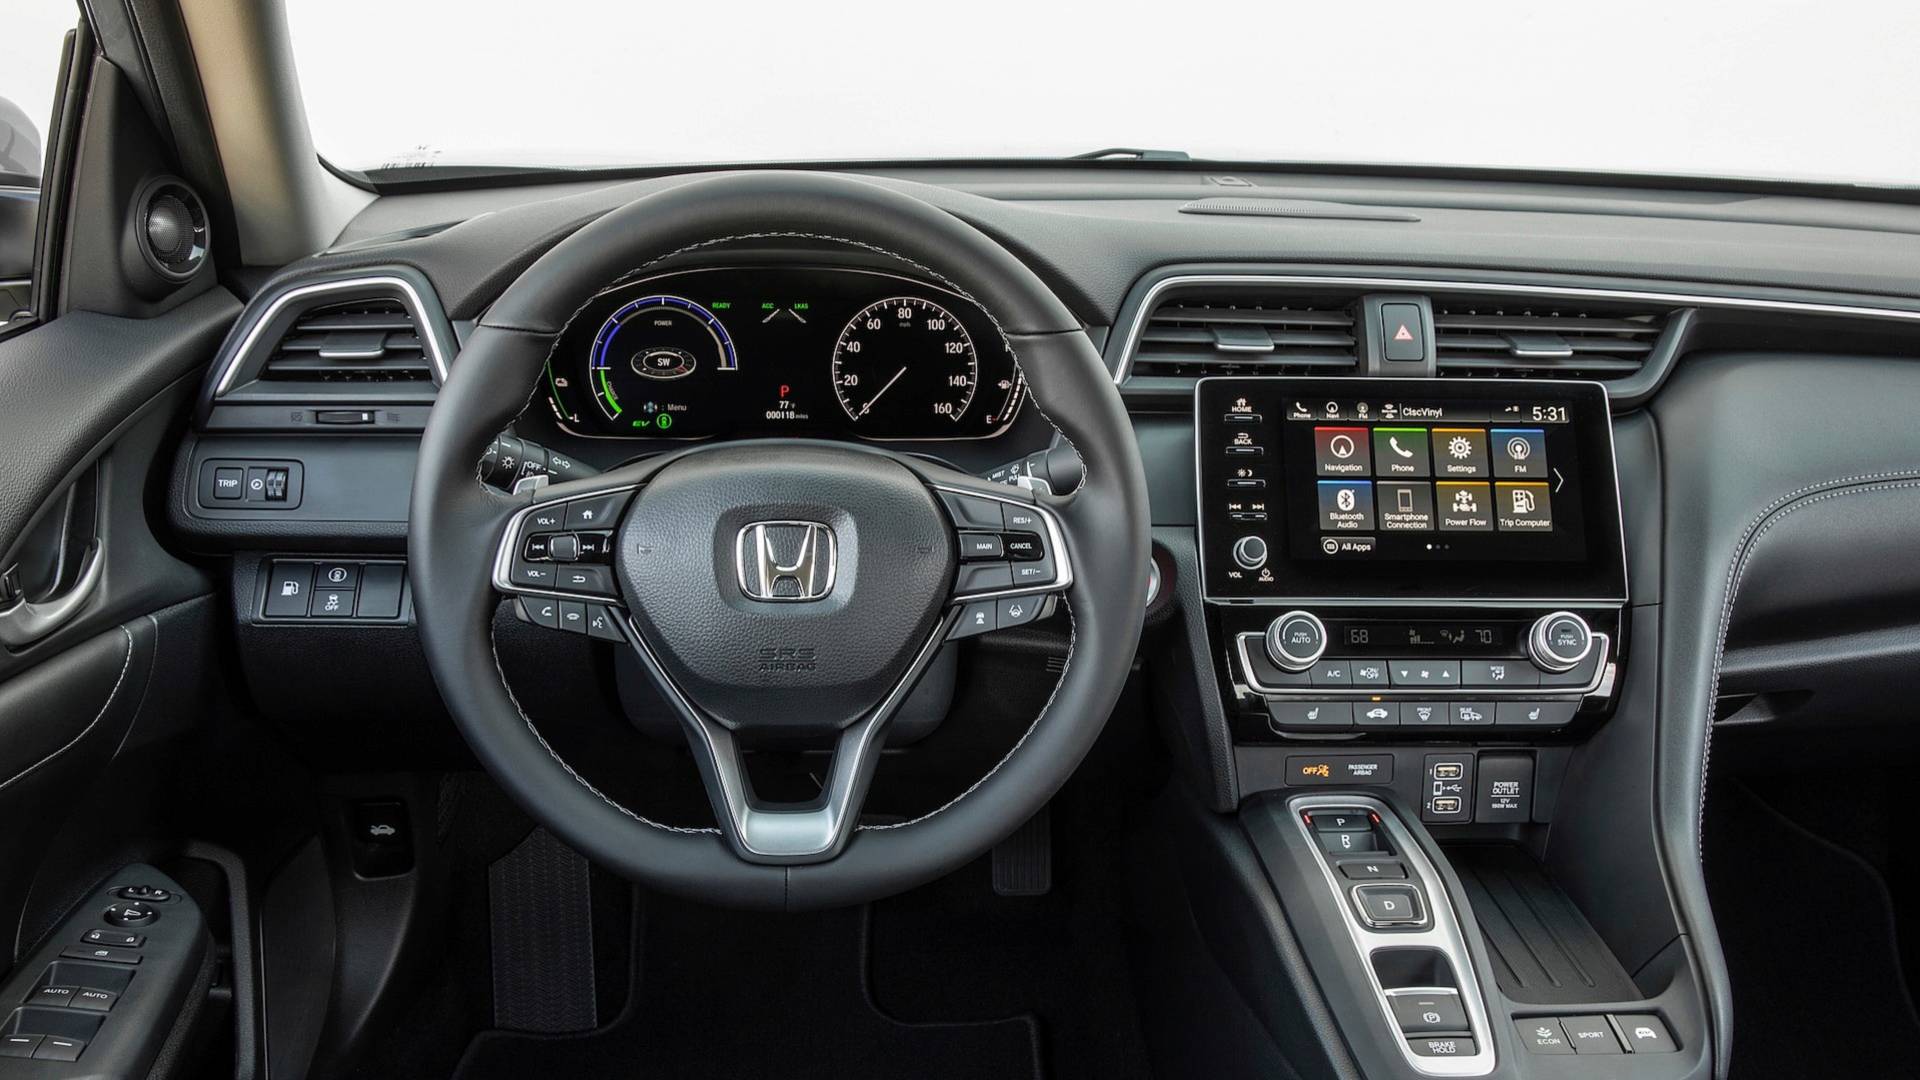 Chi tiết nội thất xe Honda Insight sang trọng 16